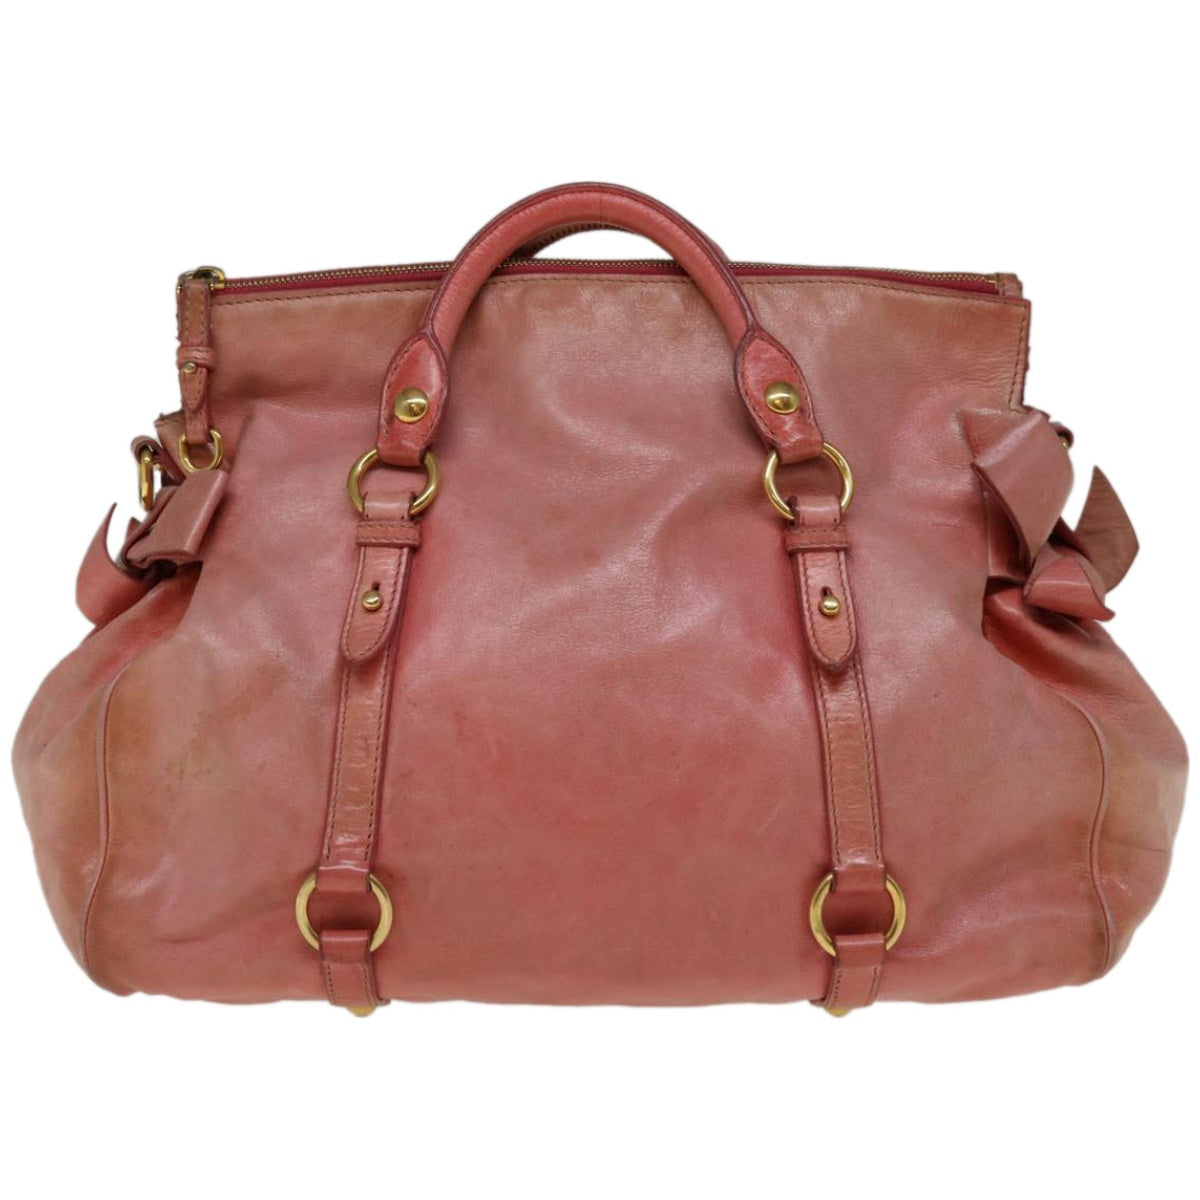 Miu Miu Hand Bag Leather 2way Pink Auth 66293 - 0